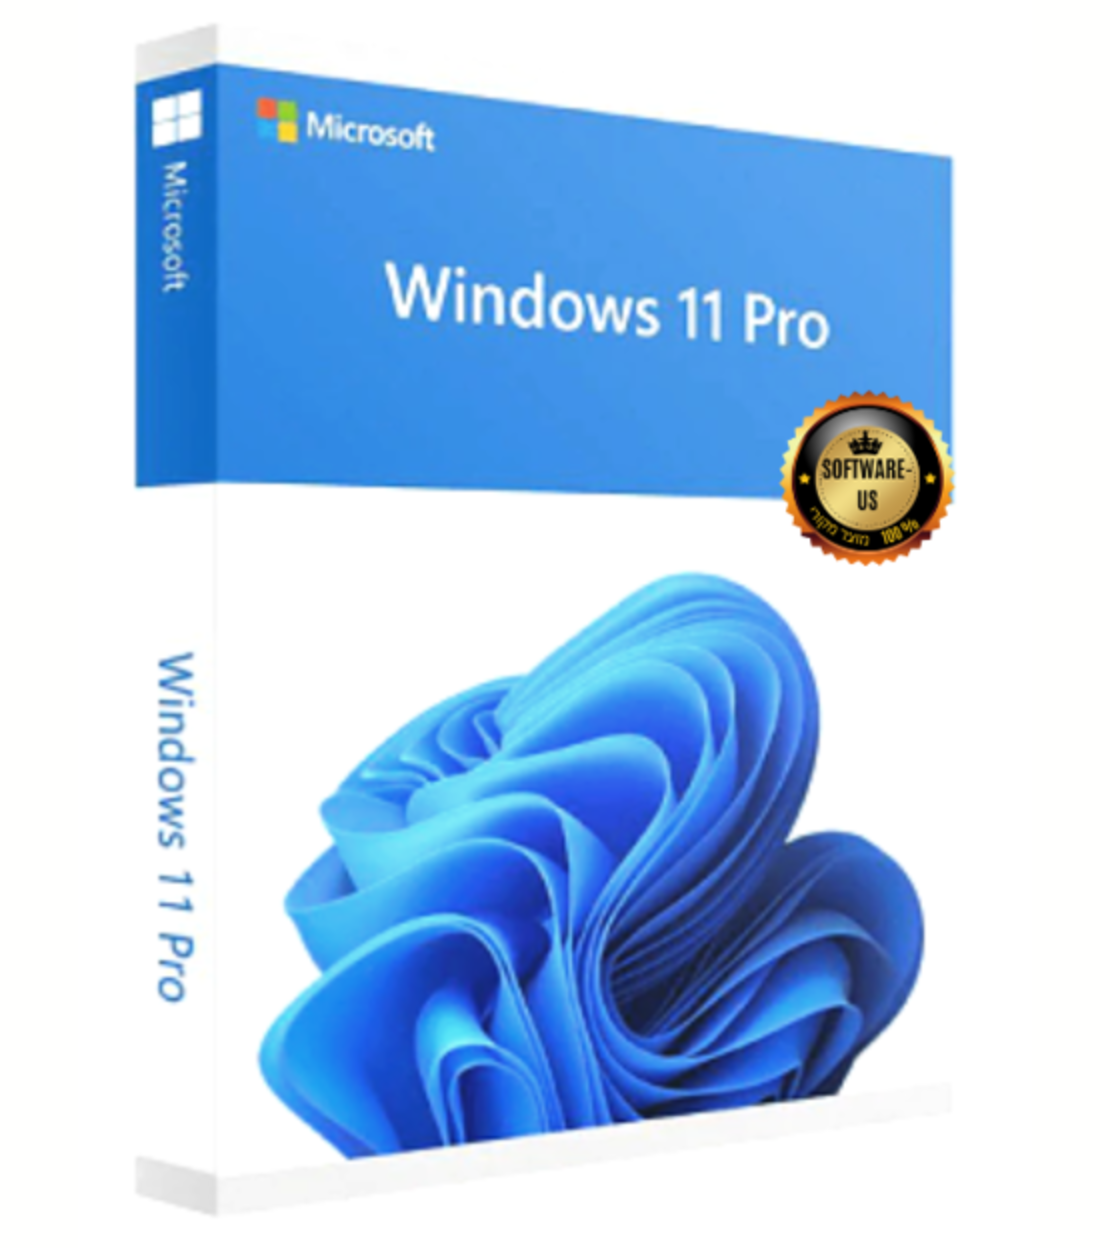 ווינדוס 11 פרו ריטייל | Windows 11 Pro- Retail (עותק דיגיטלי)